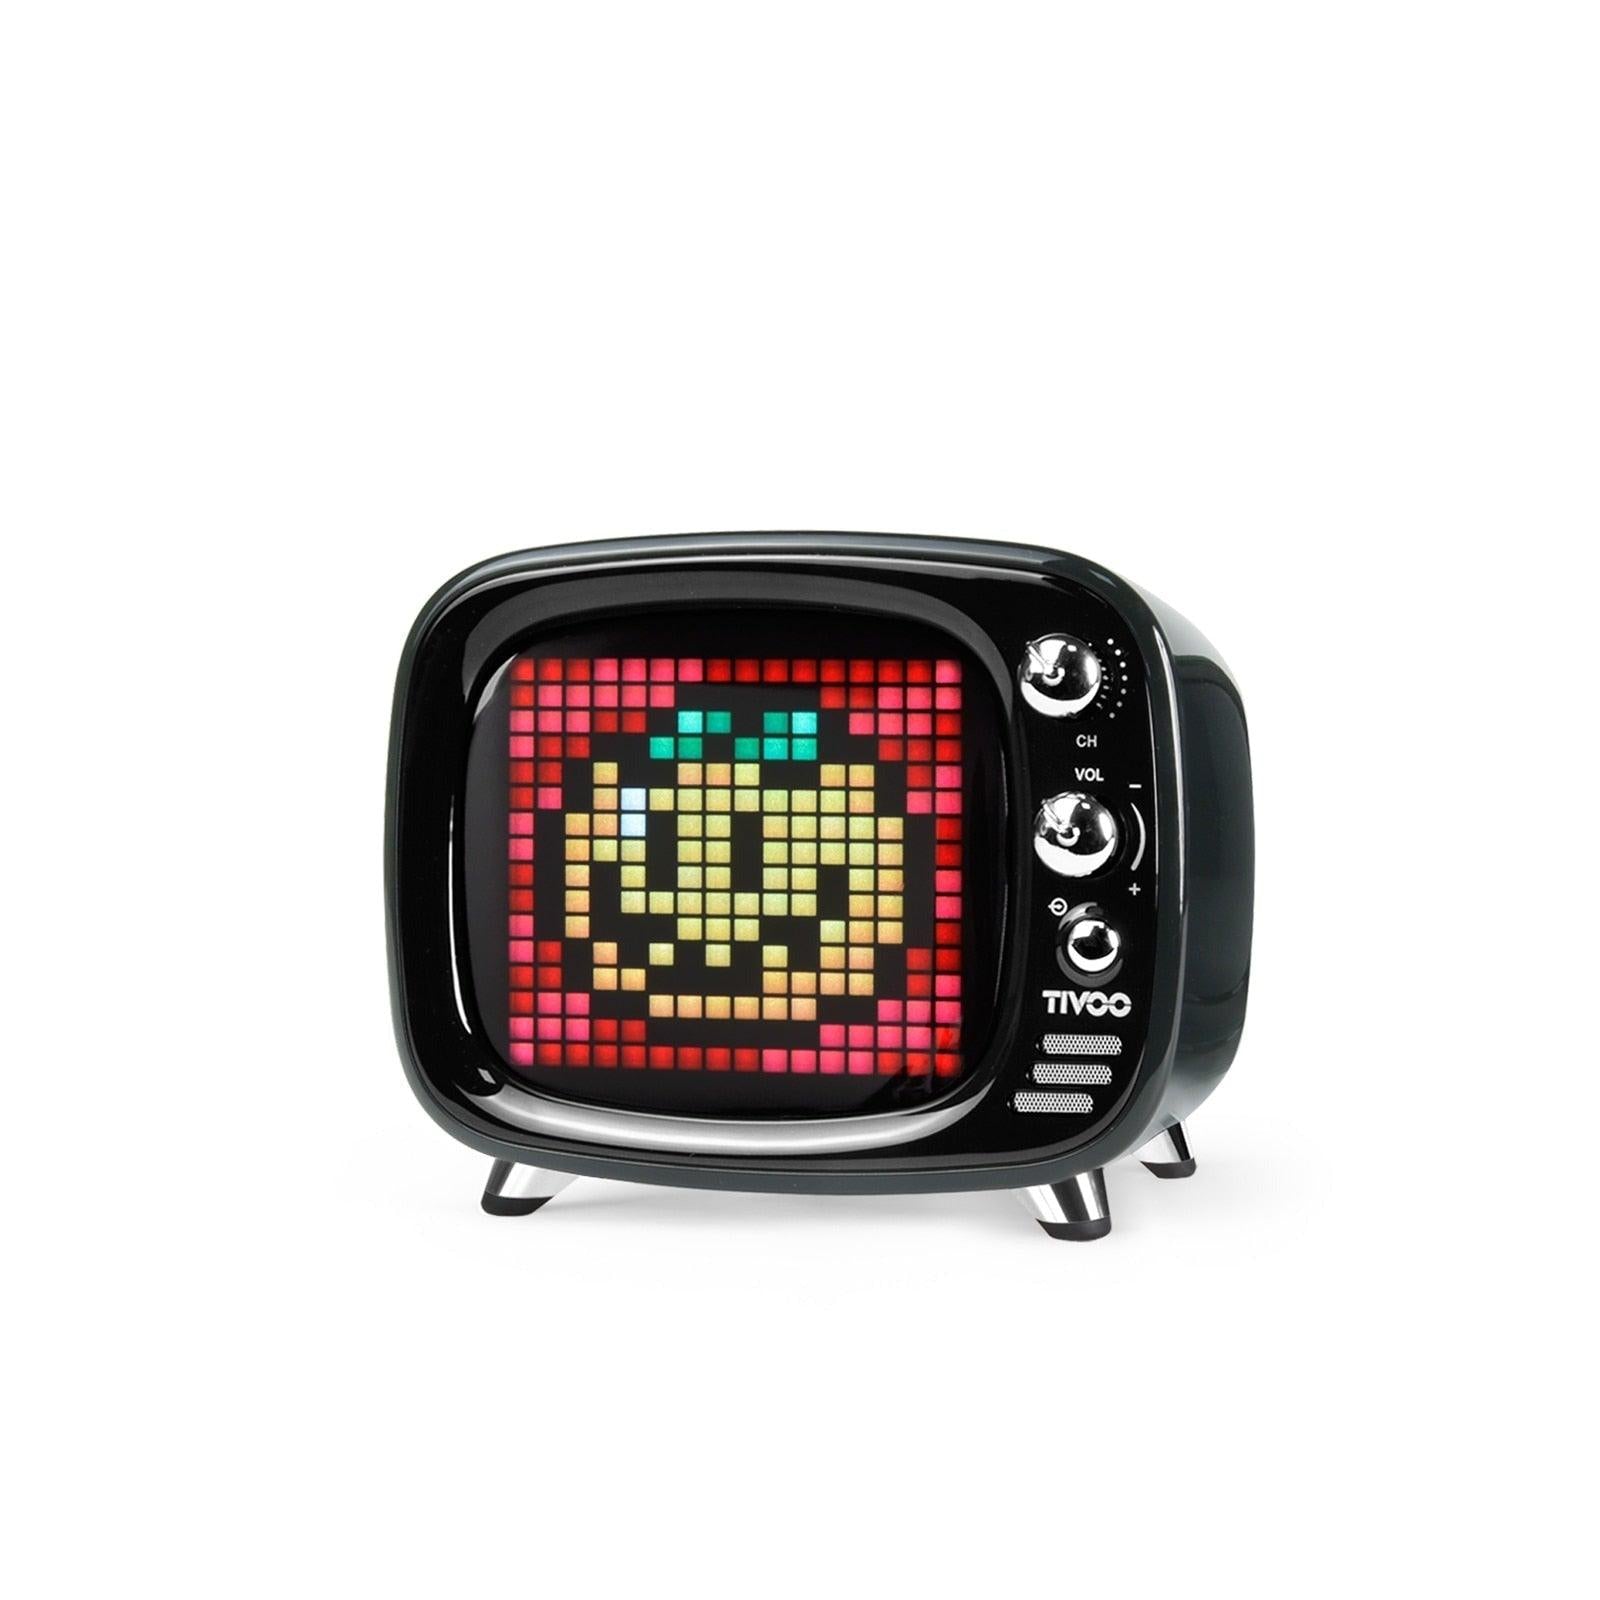 Divoom Tivoo Pixel Smart Clock - Functional and Stylish Pixel Art Clock